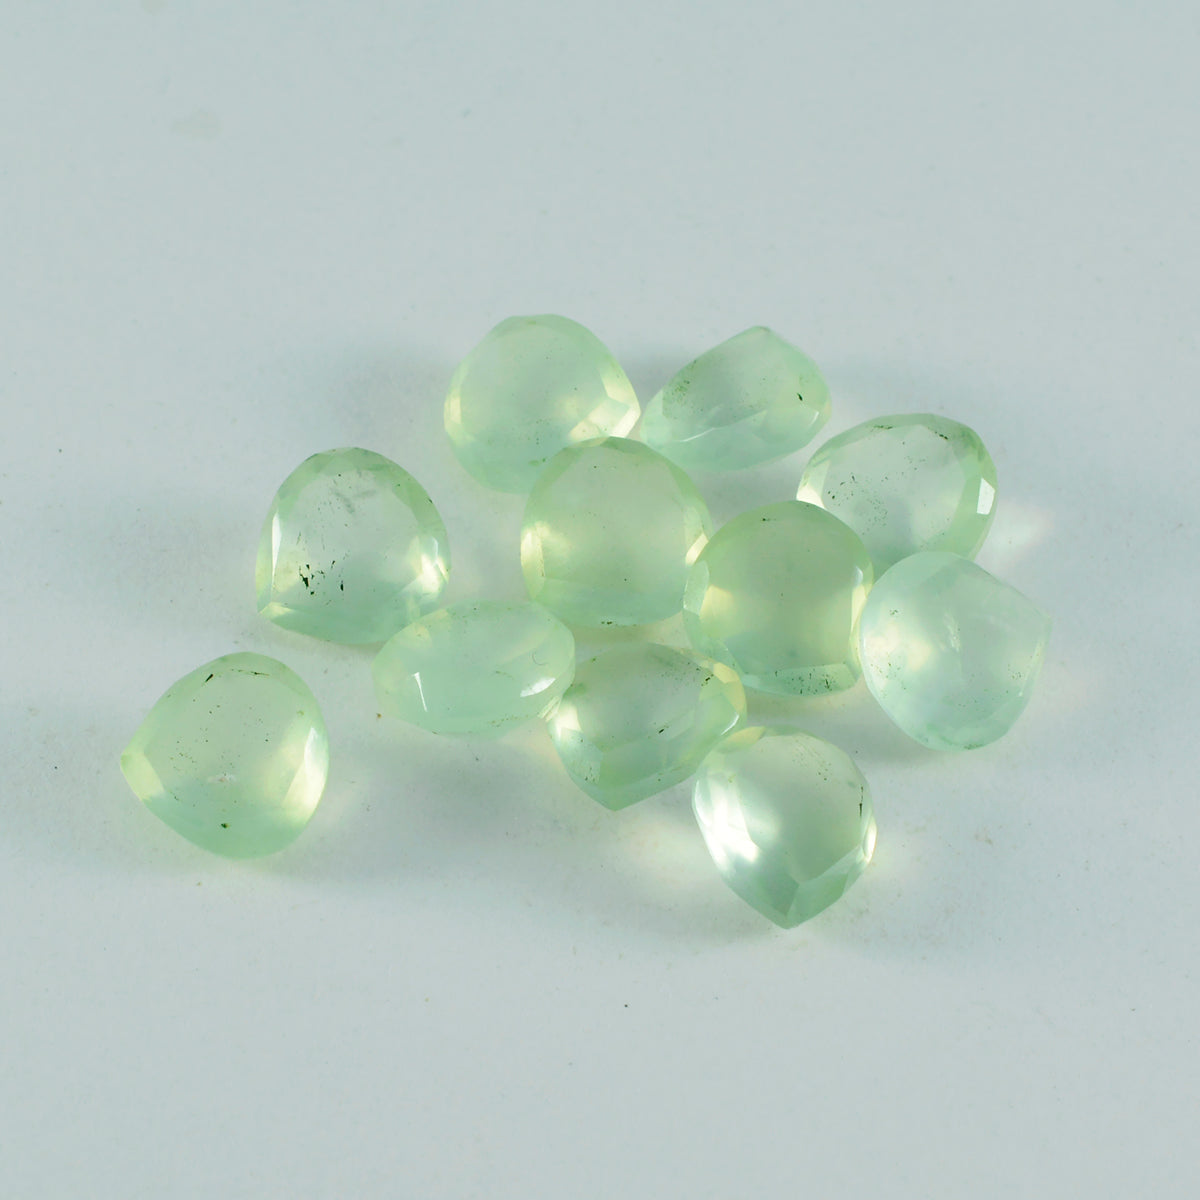 riyogems 1 шт., зеленый пренит, граненый 7x7 мм, в форме сердца, красивый, качественный, свободный драгоценный камень